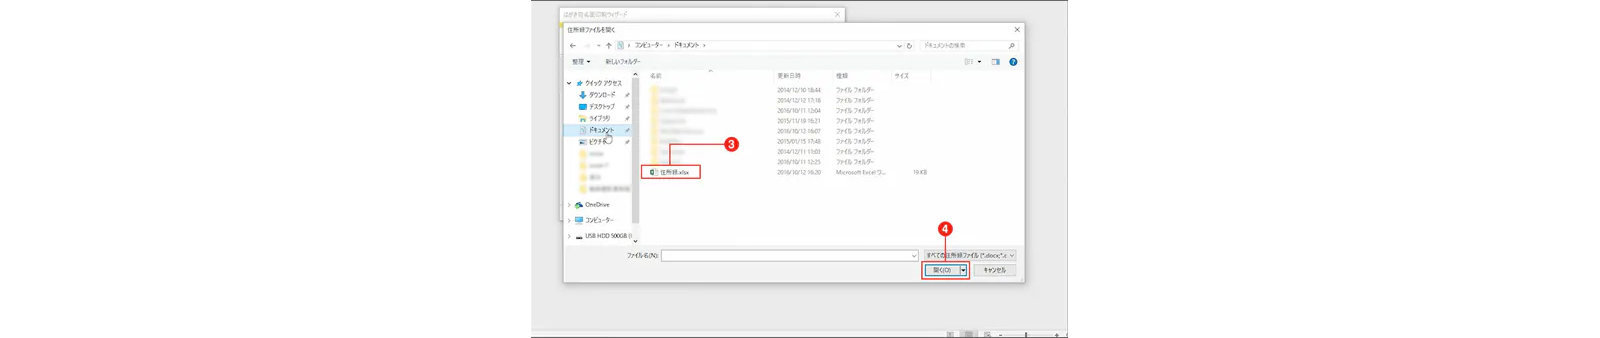 Windowsエクスプローラの画面 - ファイル名と開くボタンが赤い枠線で囲まれています